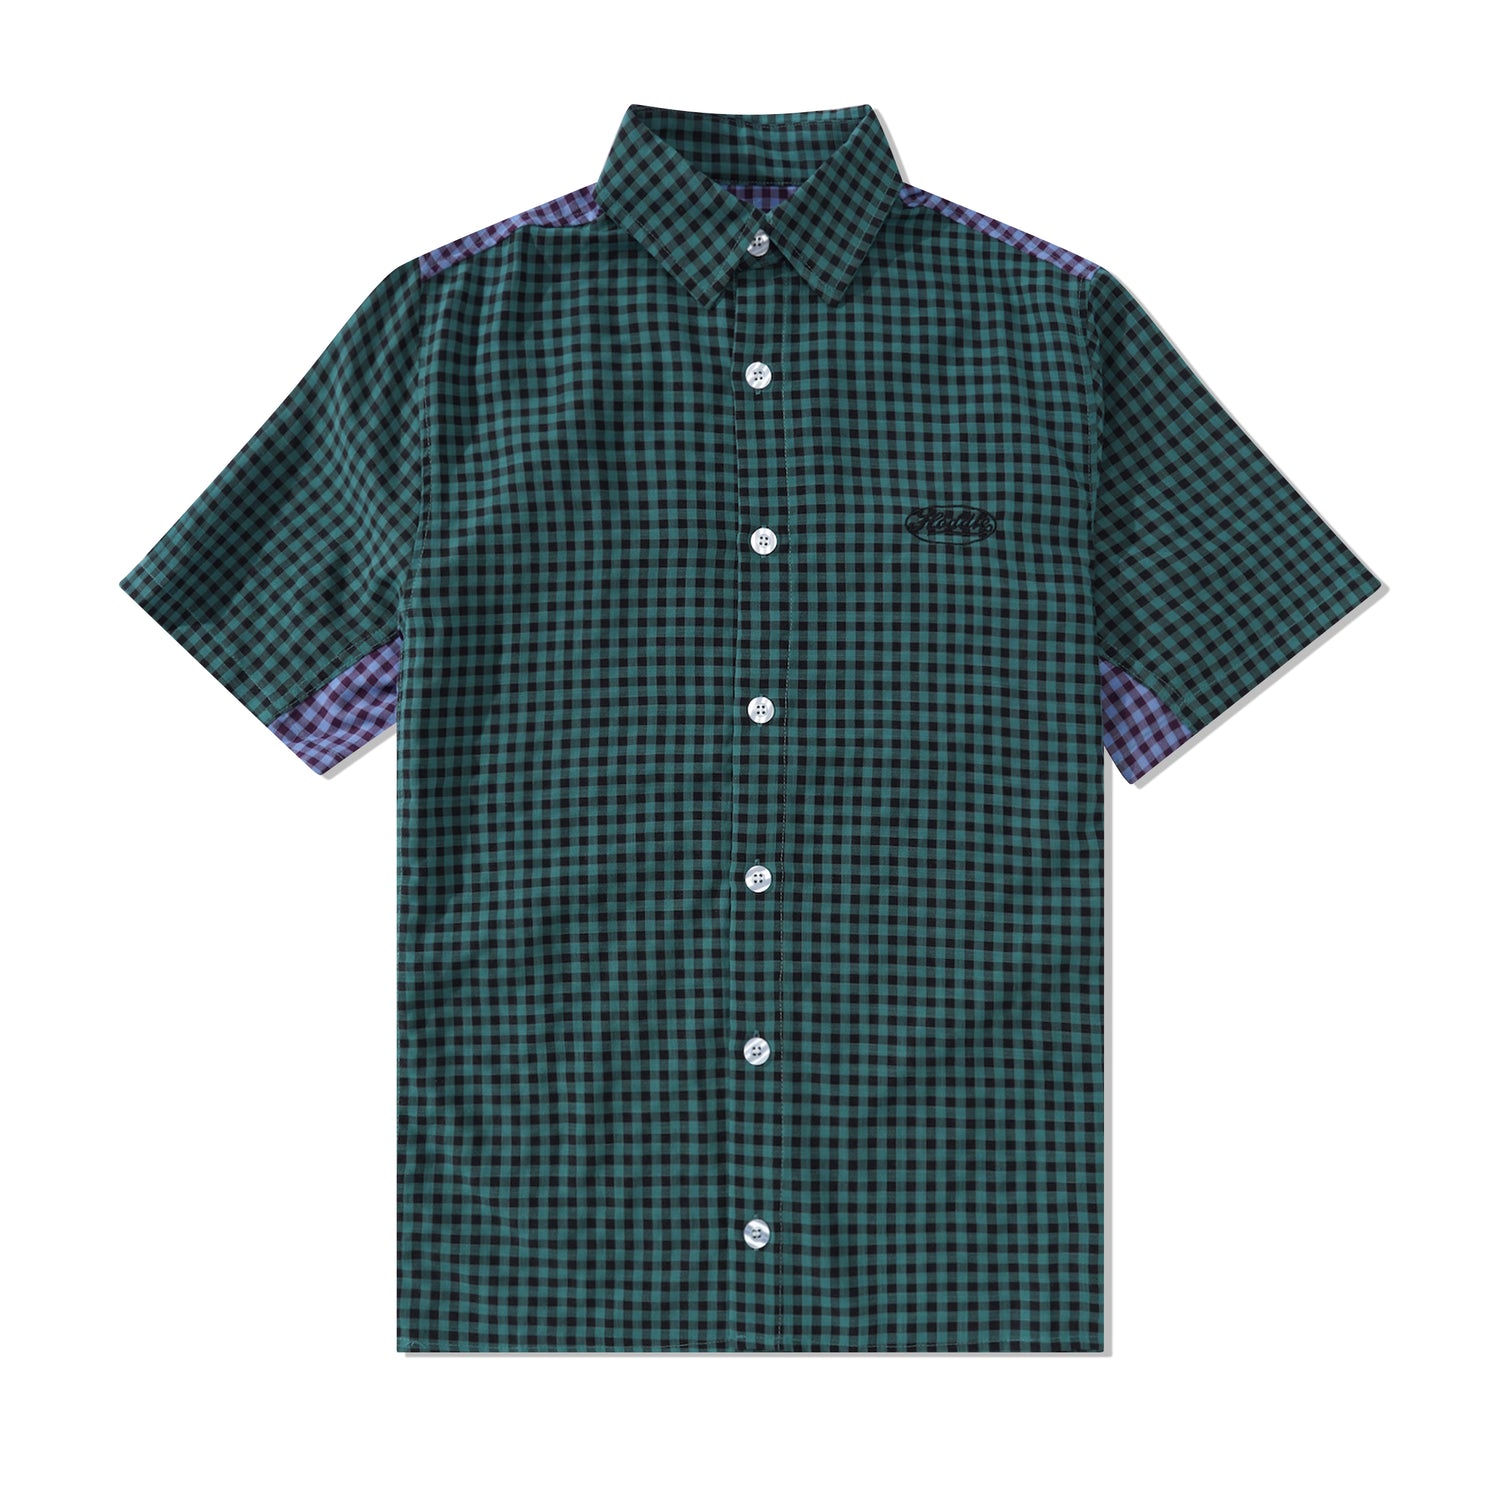 Tour S/S Shirt, Green / Blue